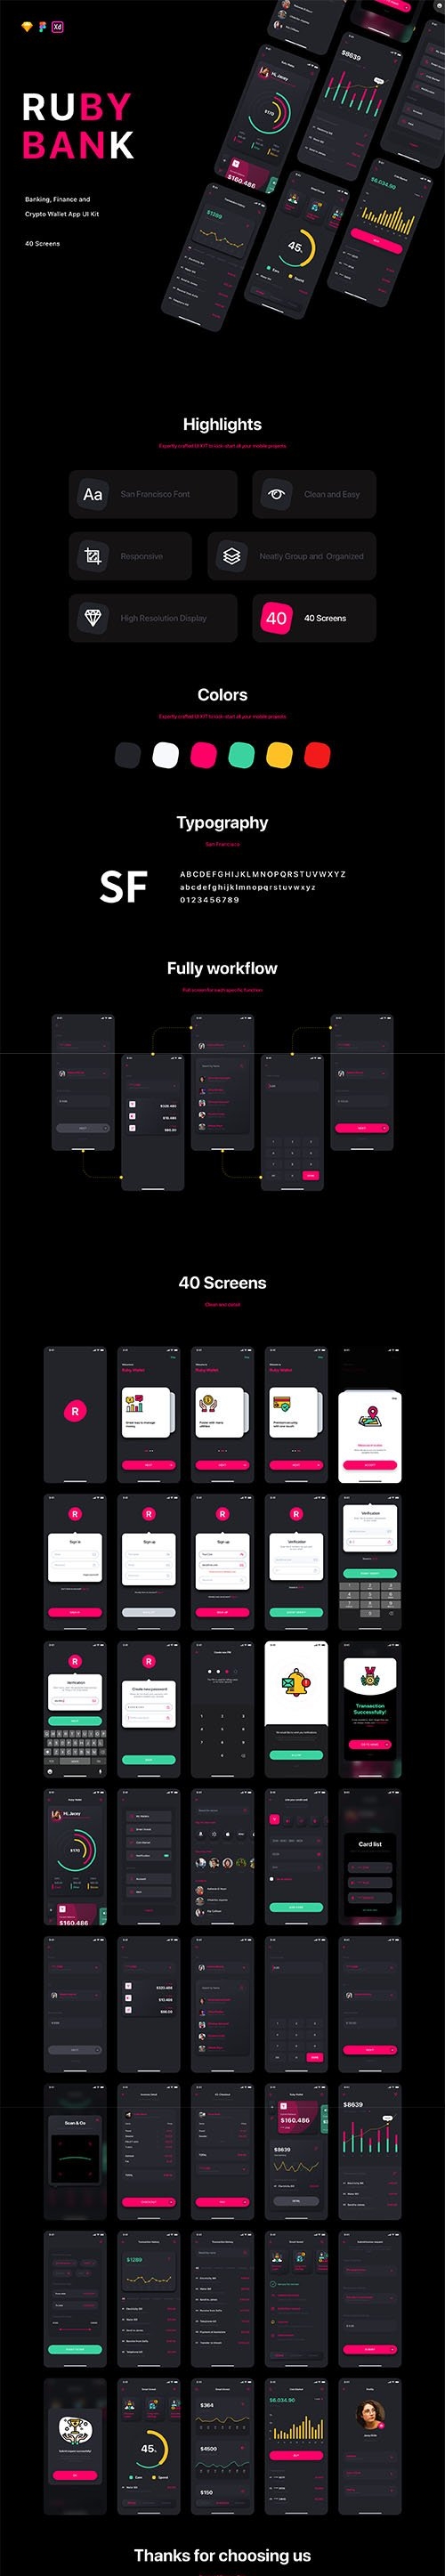 Ruby - Banking App UI Kit